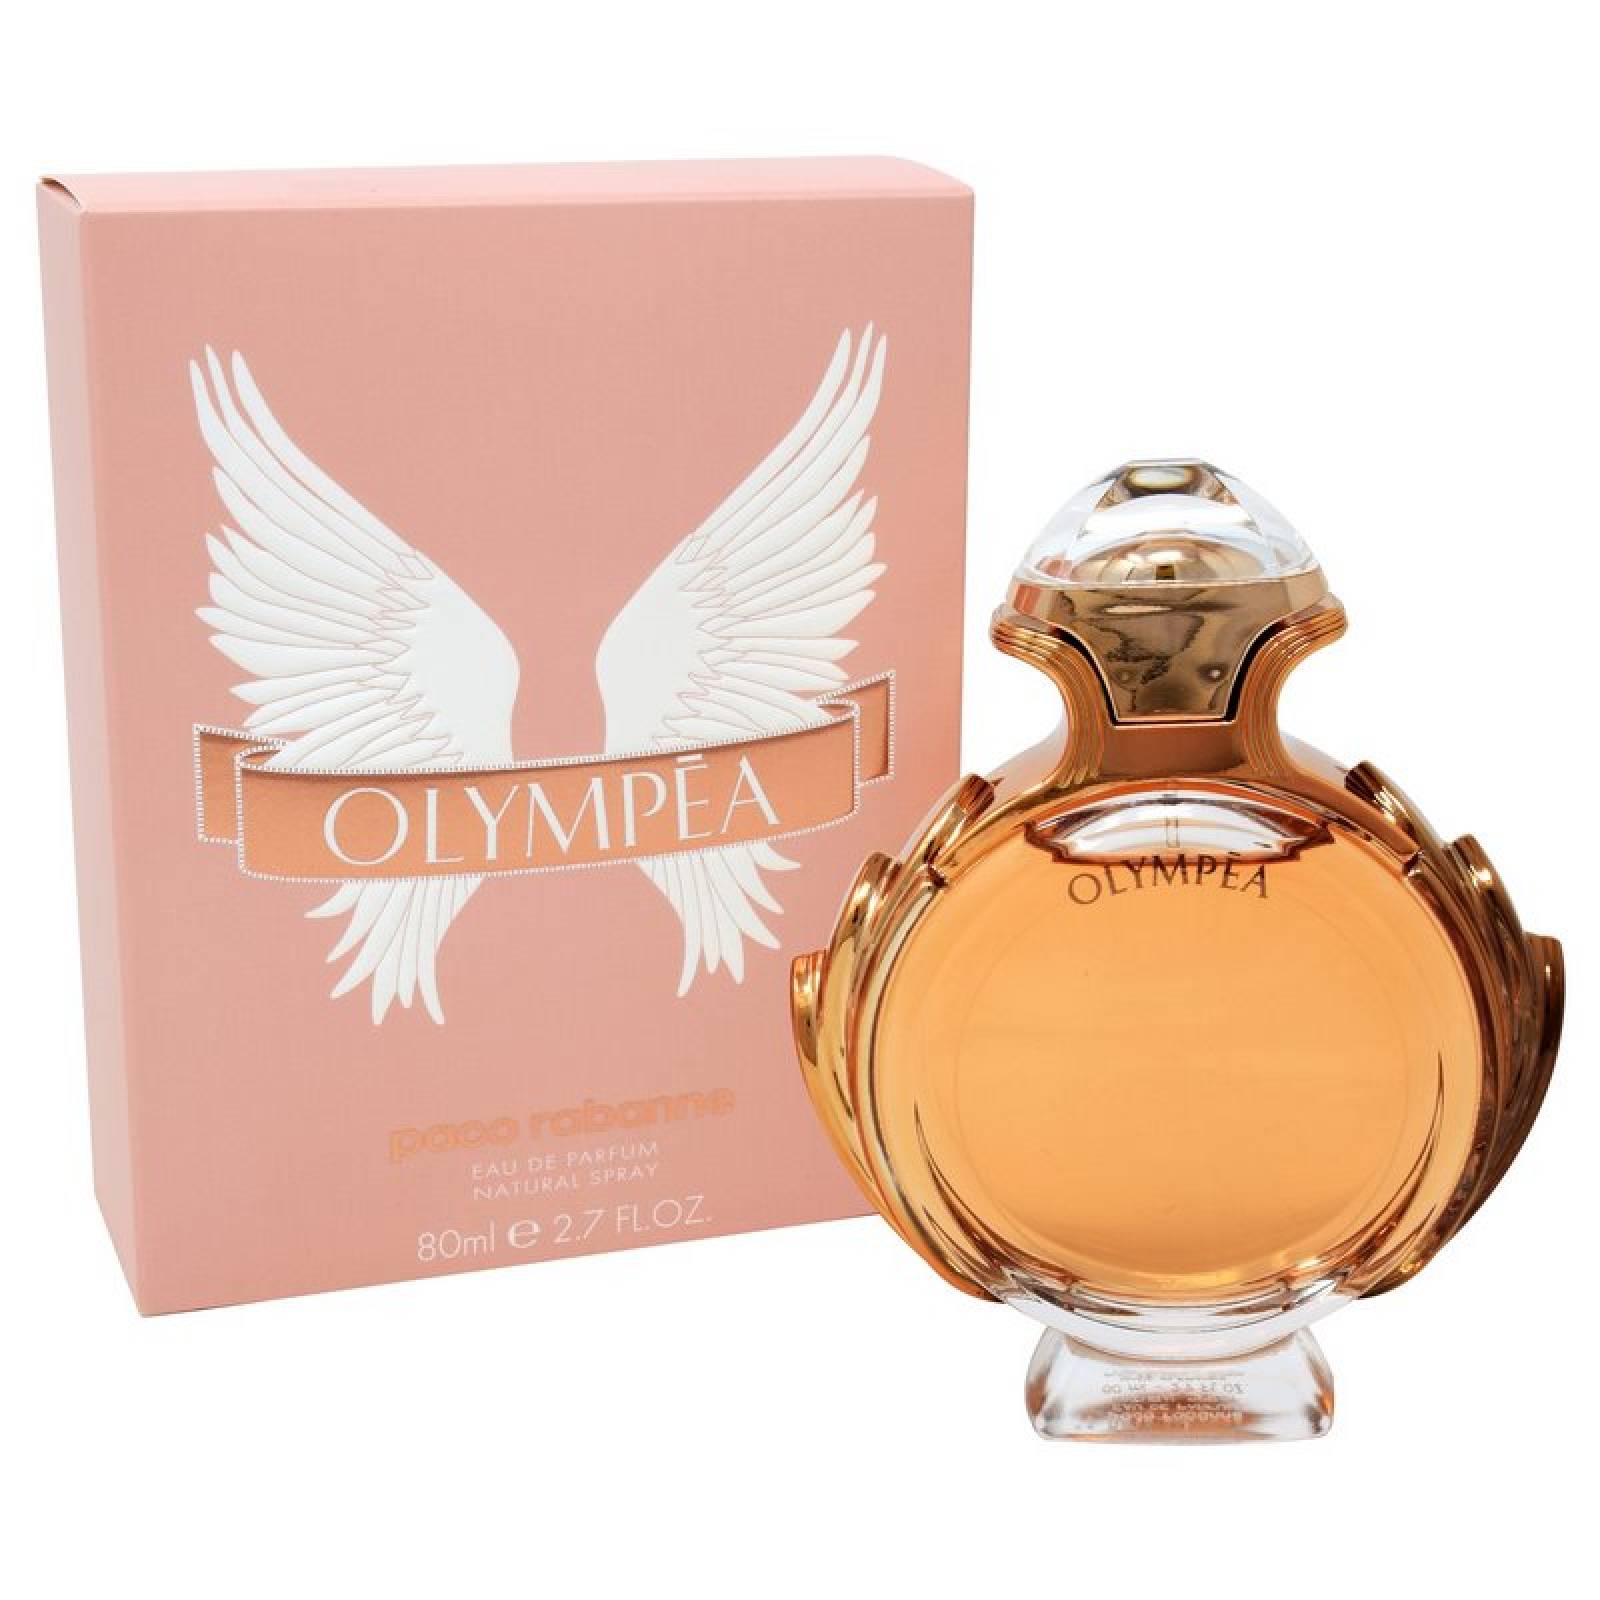 Olympea 80 ml Eau de Parfum Spray de Paco Rabanne Fragancia para Dama